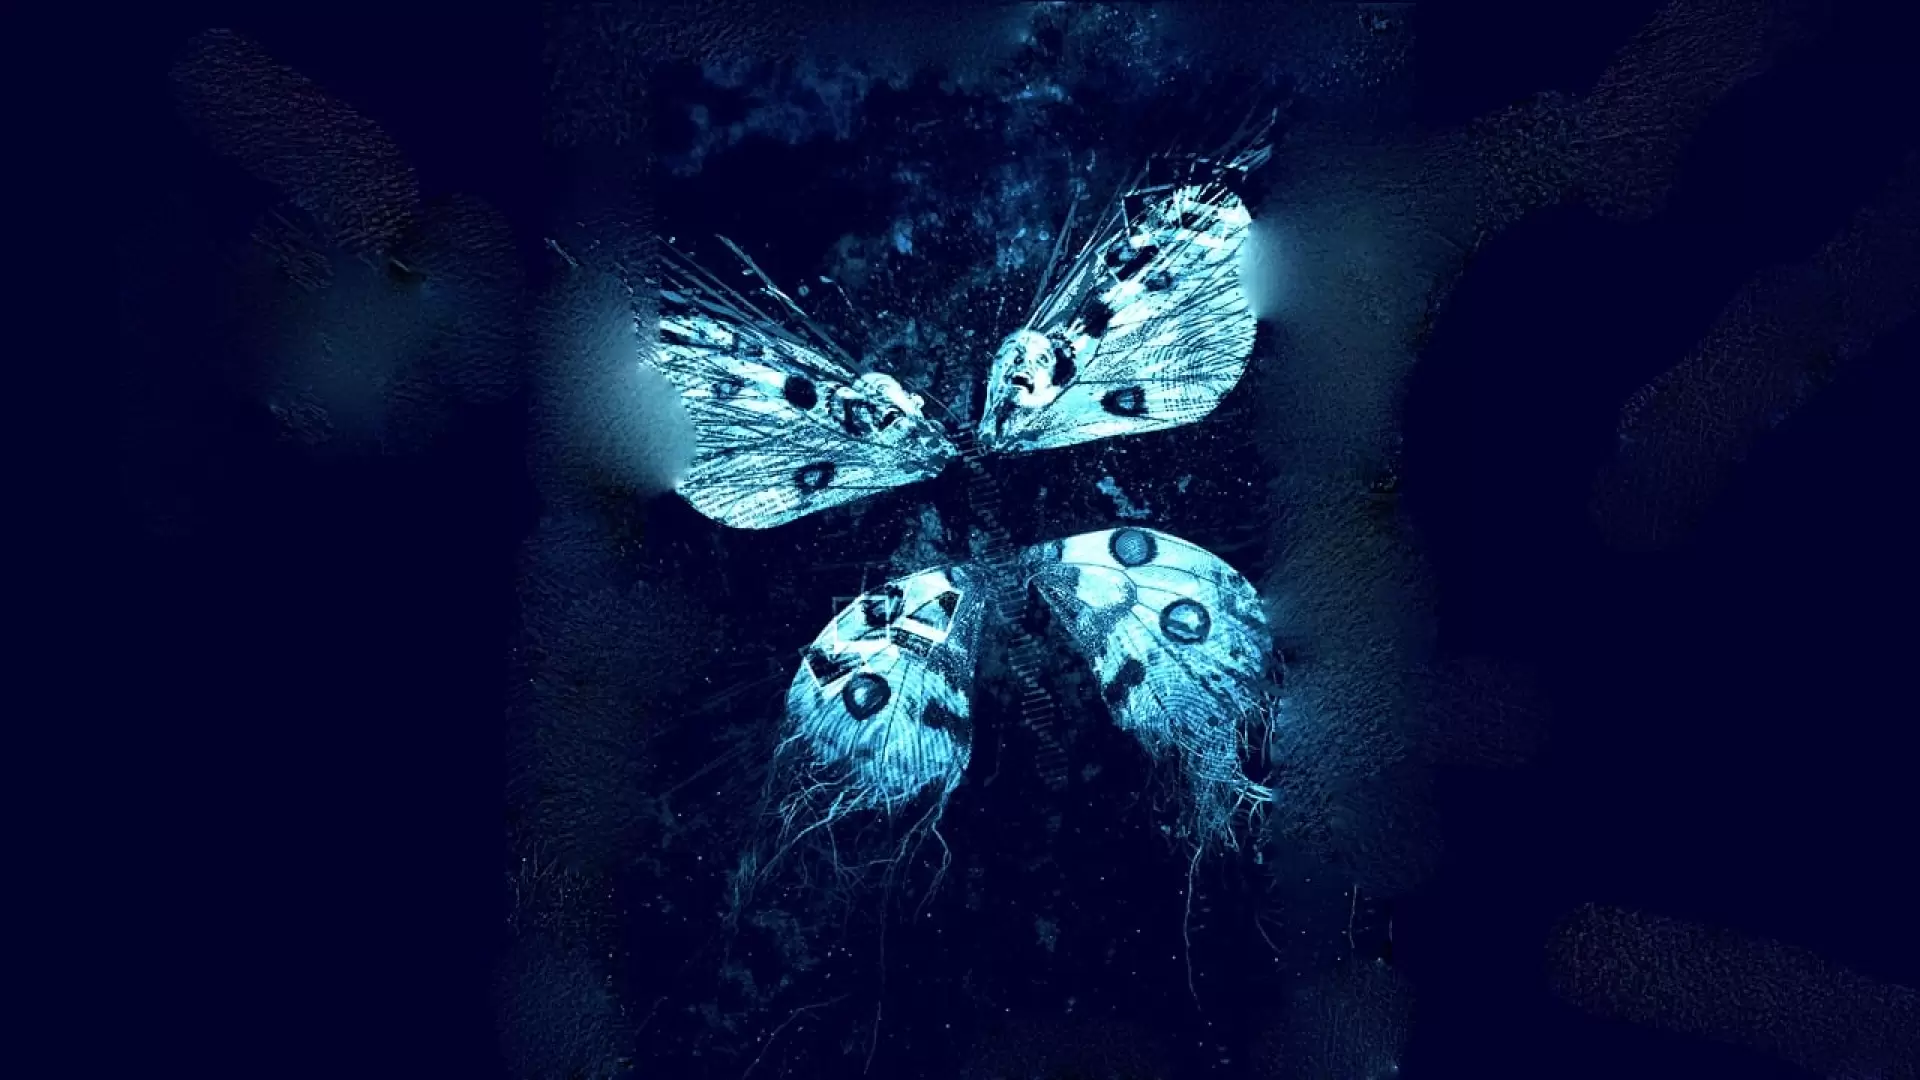 دانلود فیلم The Butterfly Effect 3: Revelations 2009 با زیرنویس فارسی